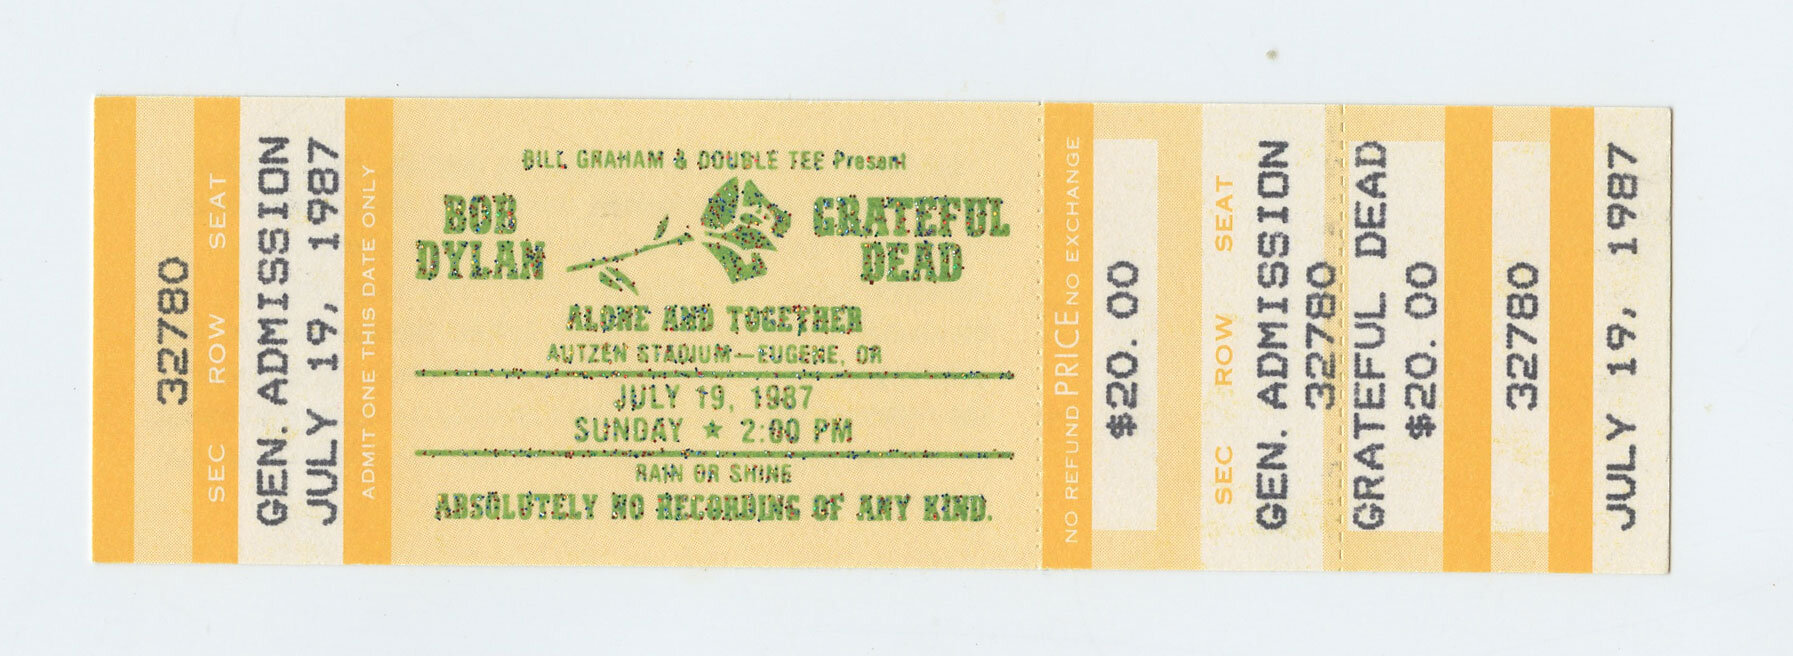 Bob Dylan Vintage Ticket w/ Grateful Dead 1987 Jul 19 Autzen Stadium Eugene OR 